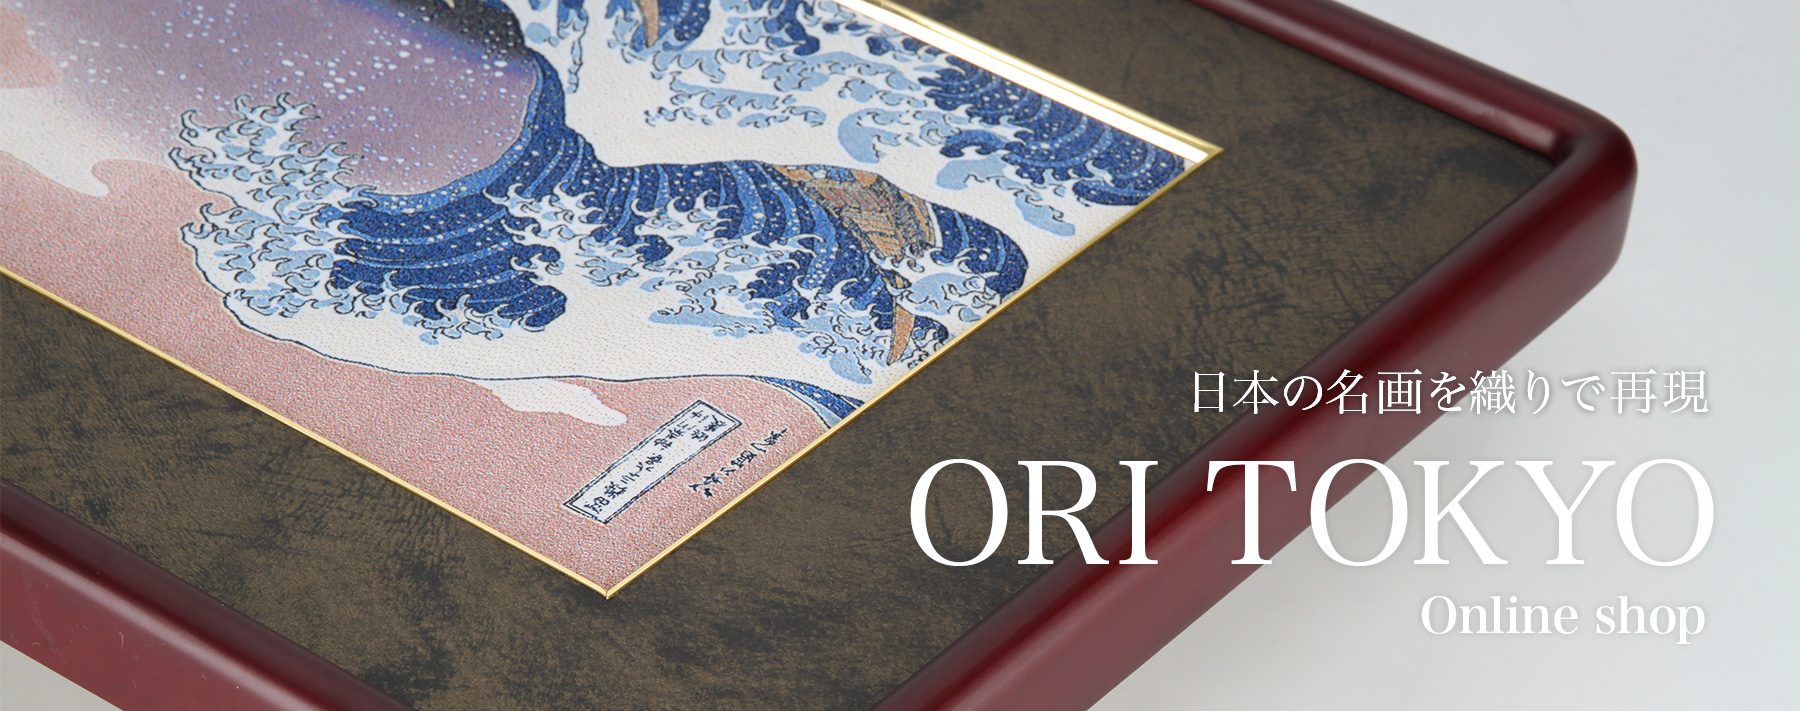 日本の名画を織りで再現【ORI TOKYO オンラインショップ】葛飾北斎の『富嶽三十六景』シリーズを再現した「織り」作品の通販を行っております。